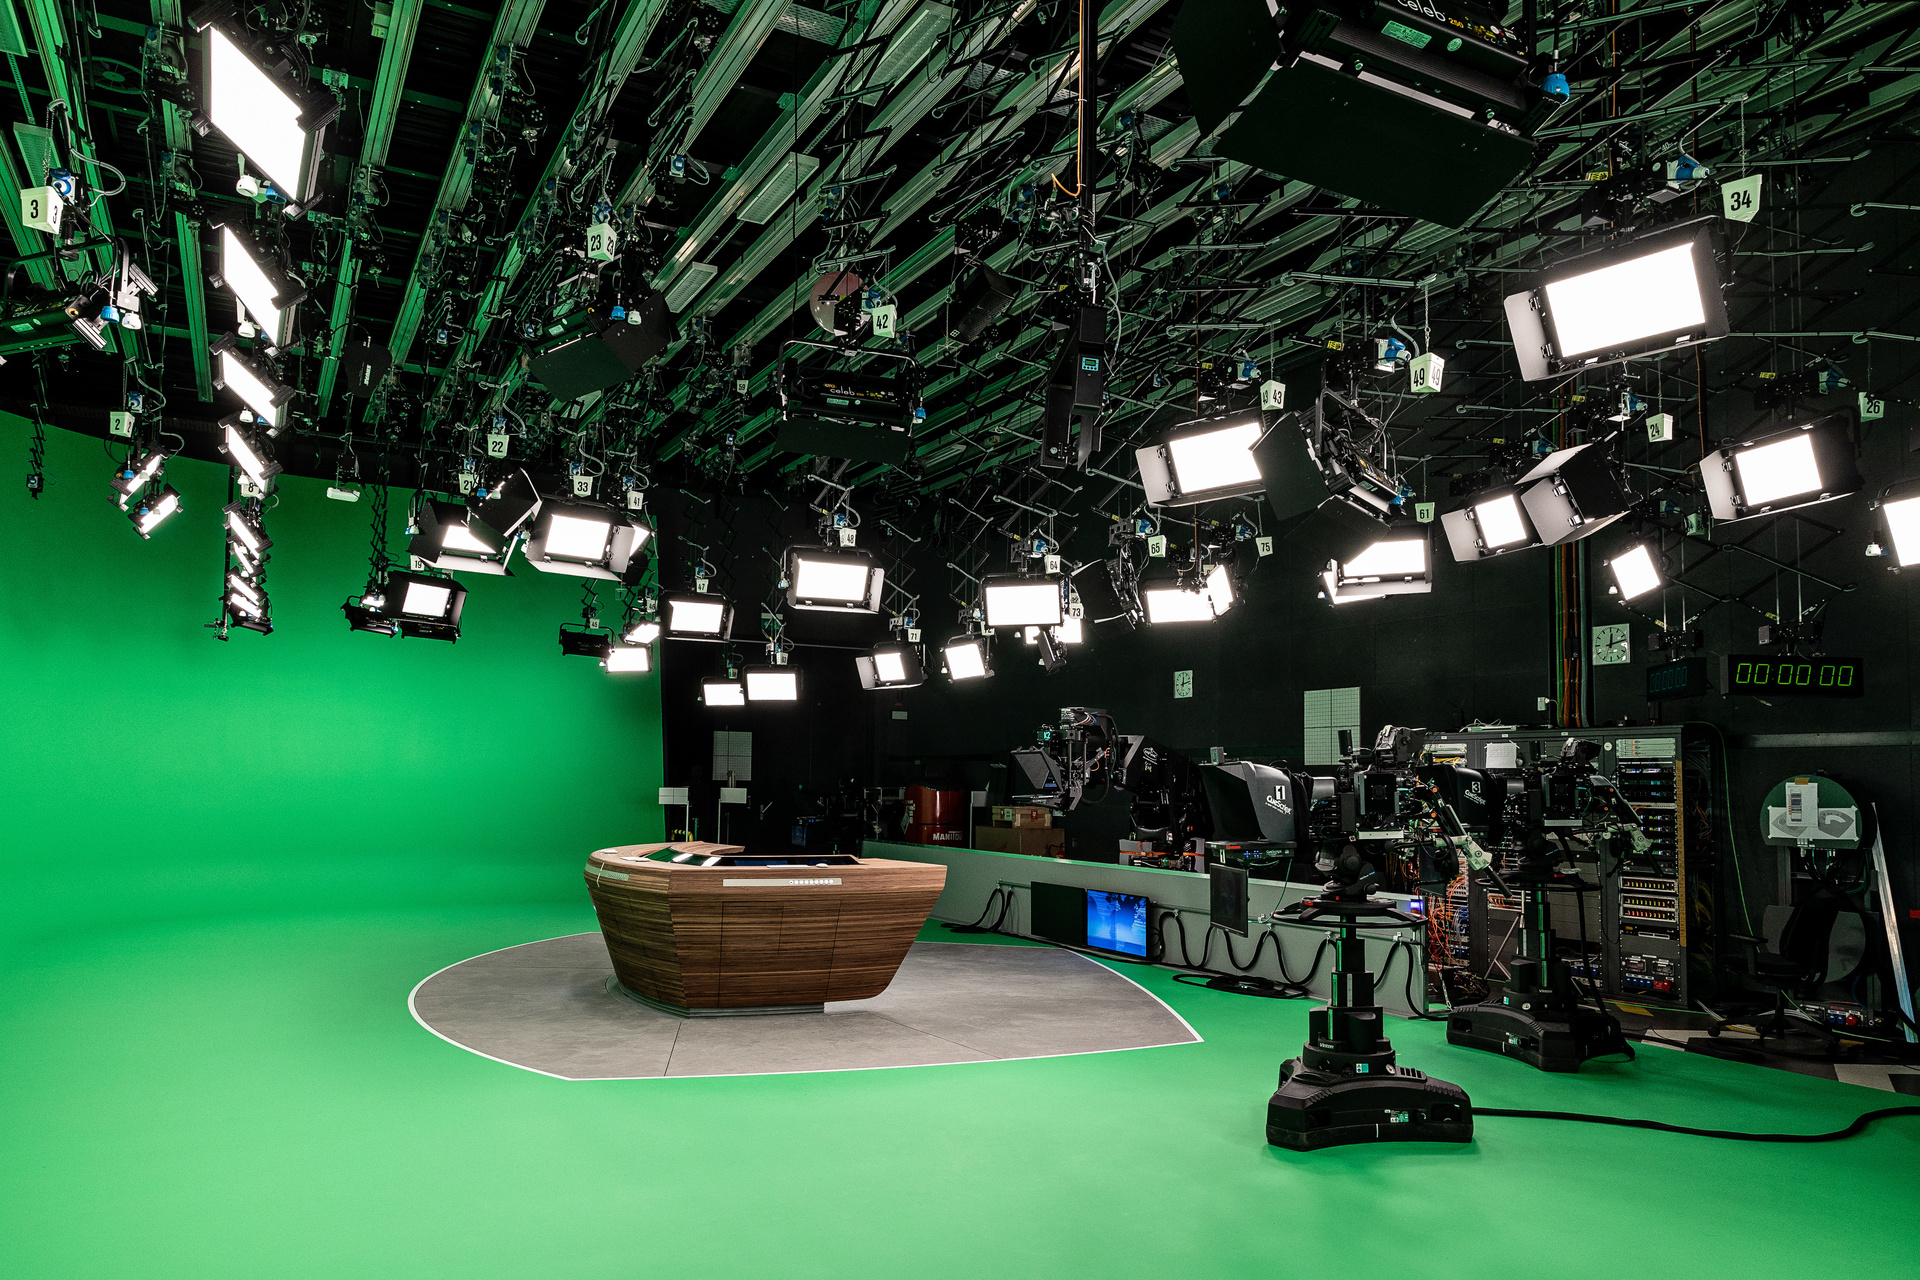 ZDF-Nachrichtenstudio mit neuem Moderationstisch